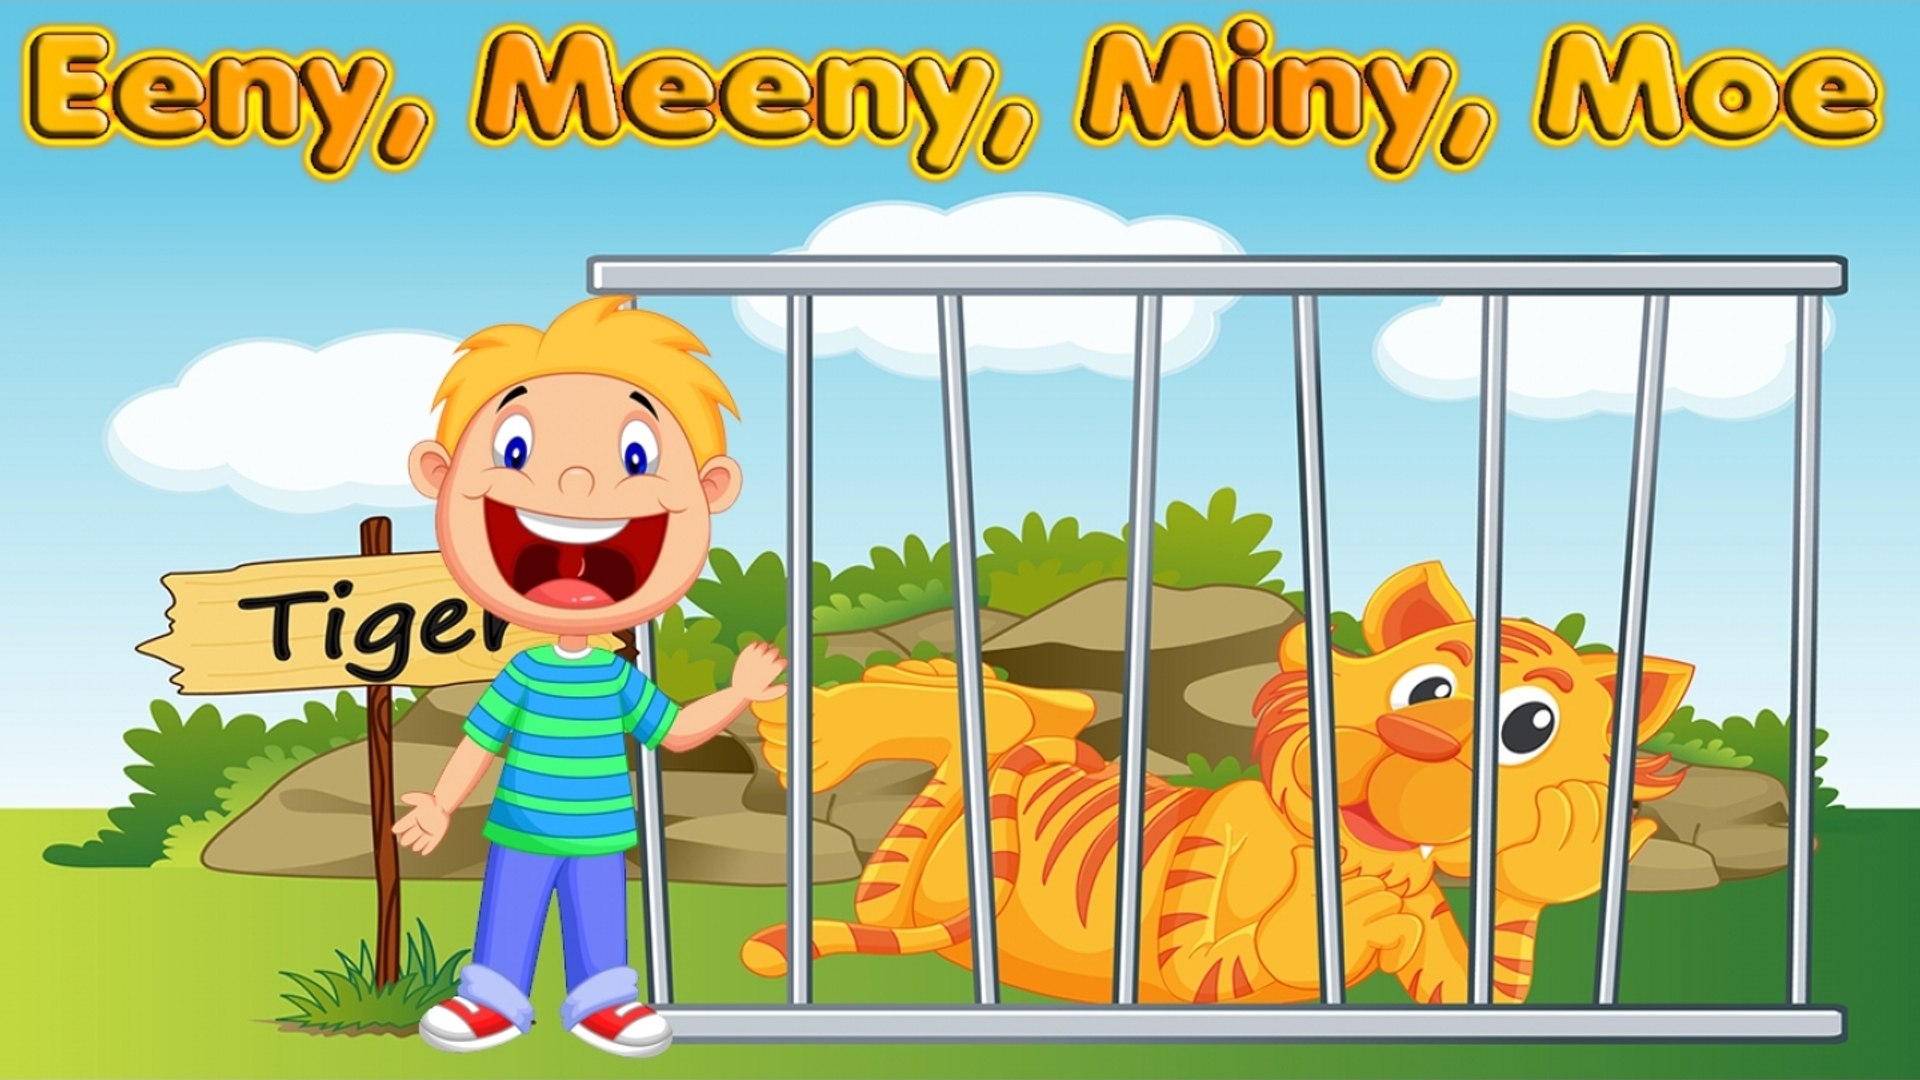 Image result for ‘Eenie, Meenie, Miney, Moe’ children